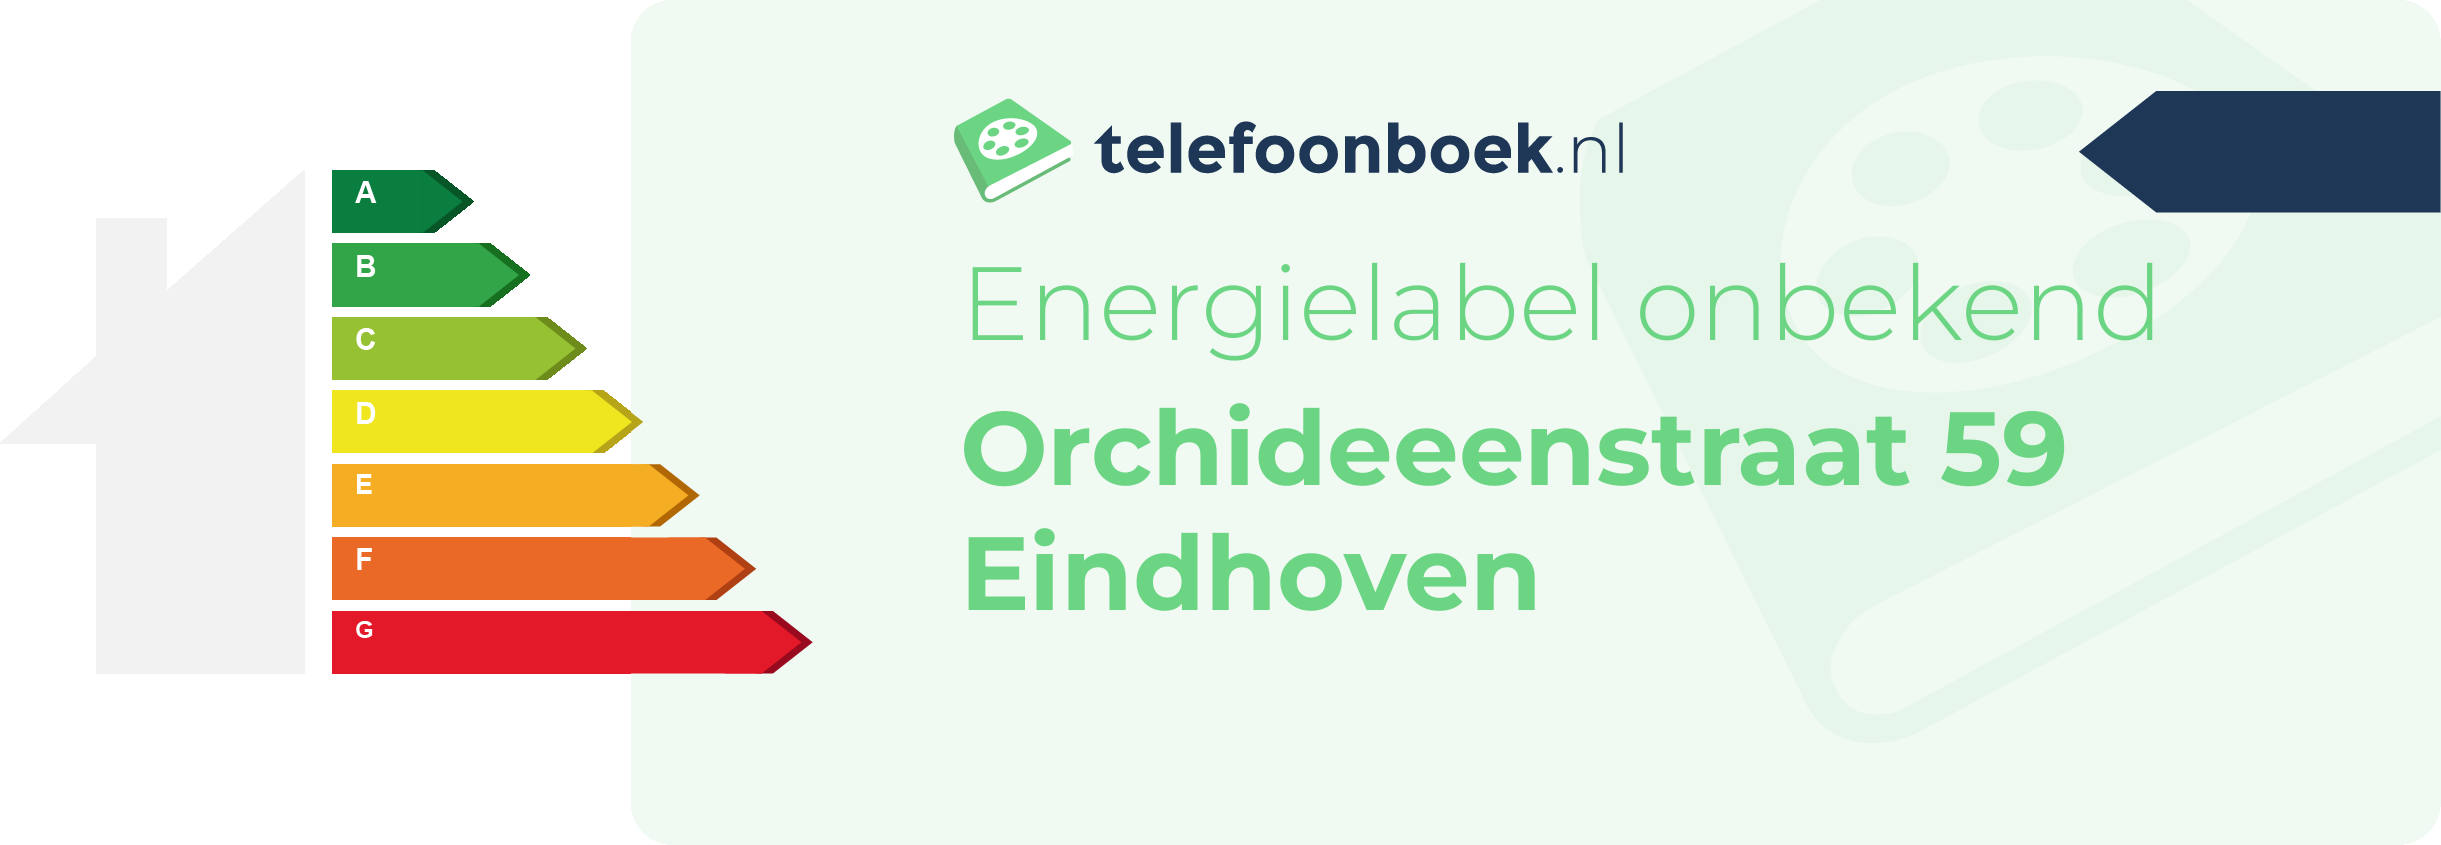 Energielabel Orchideeenstraat 59 Eindhoven